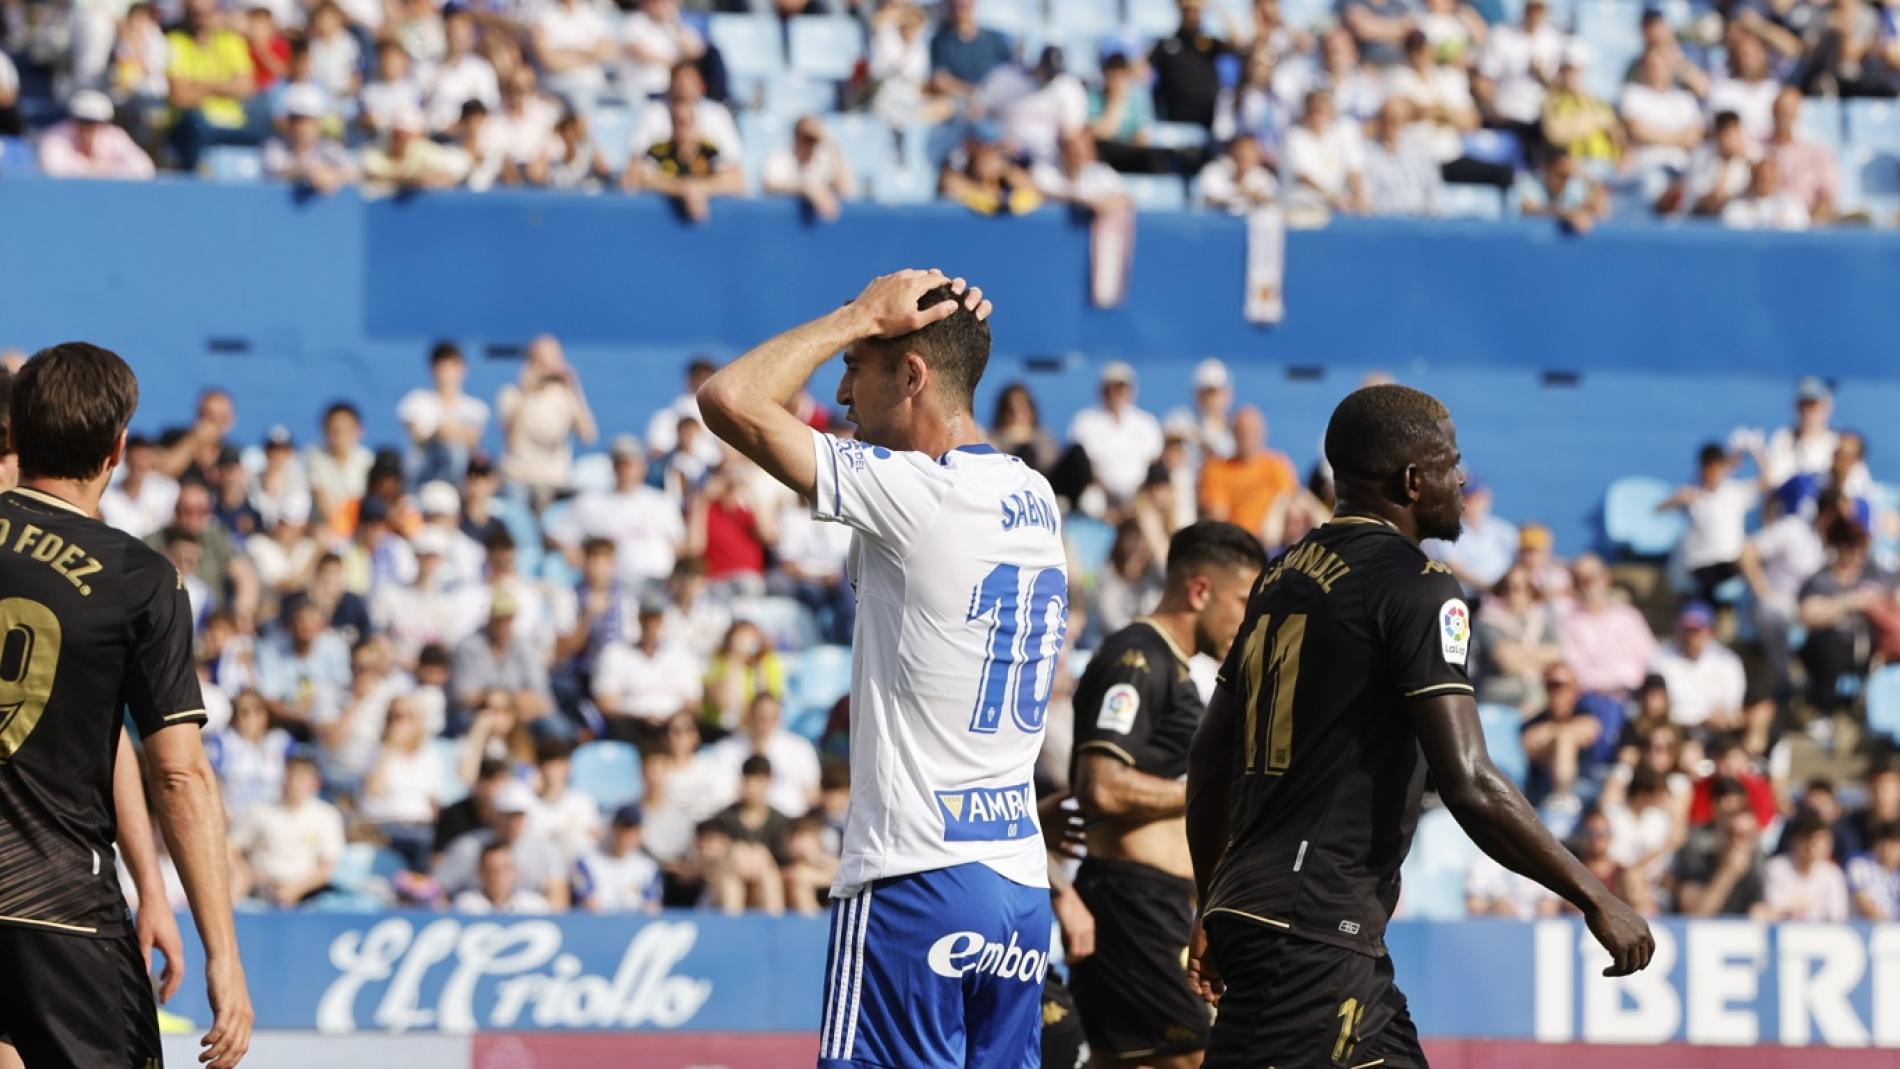 El Real Zaragoza grita que sigue aspirando a todo, Nuestro deporte